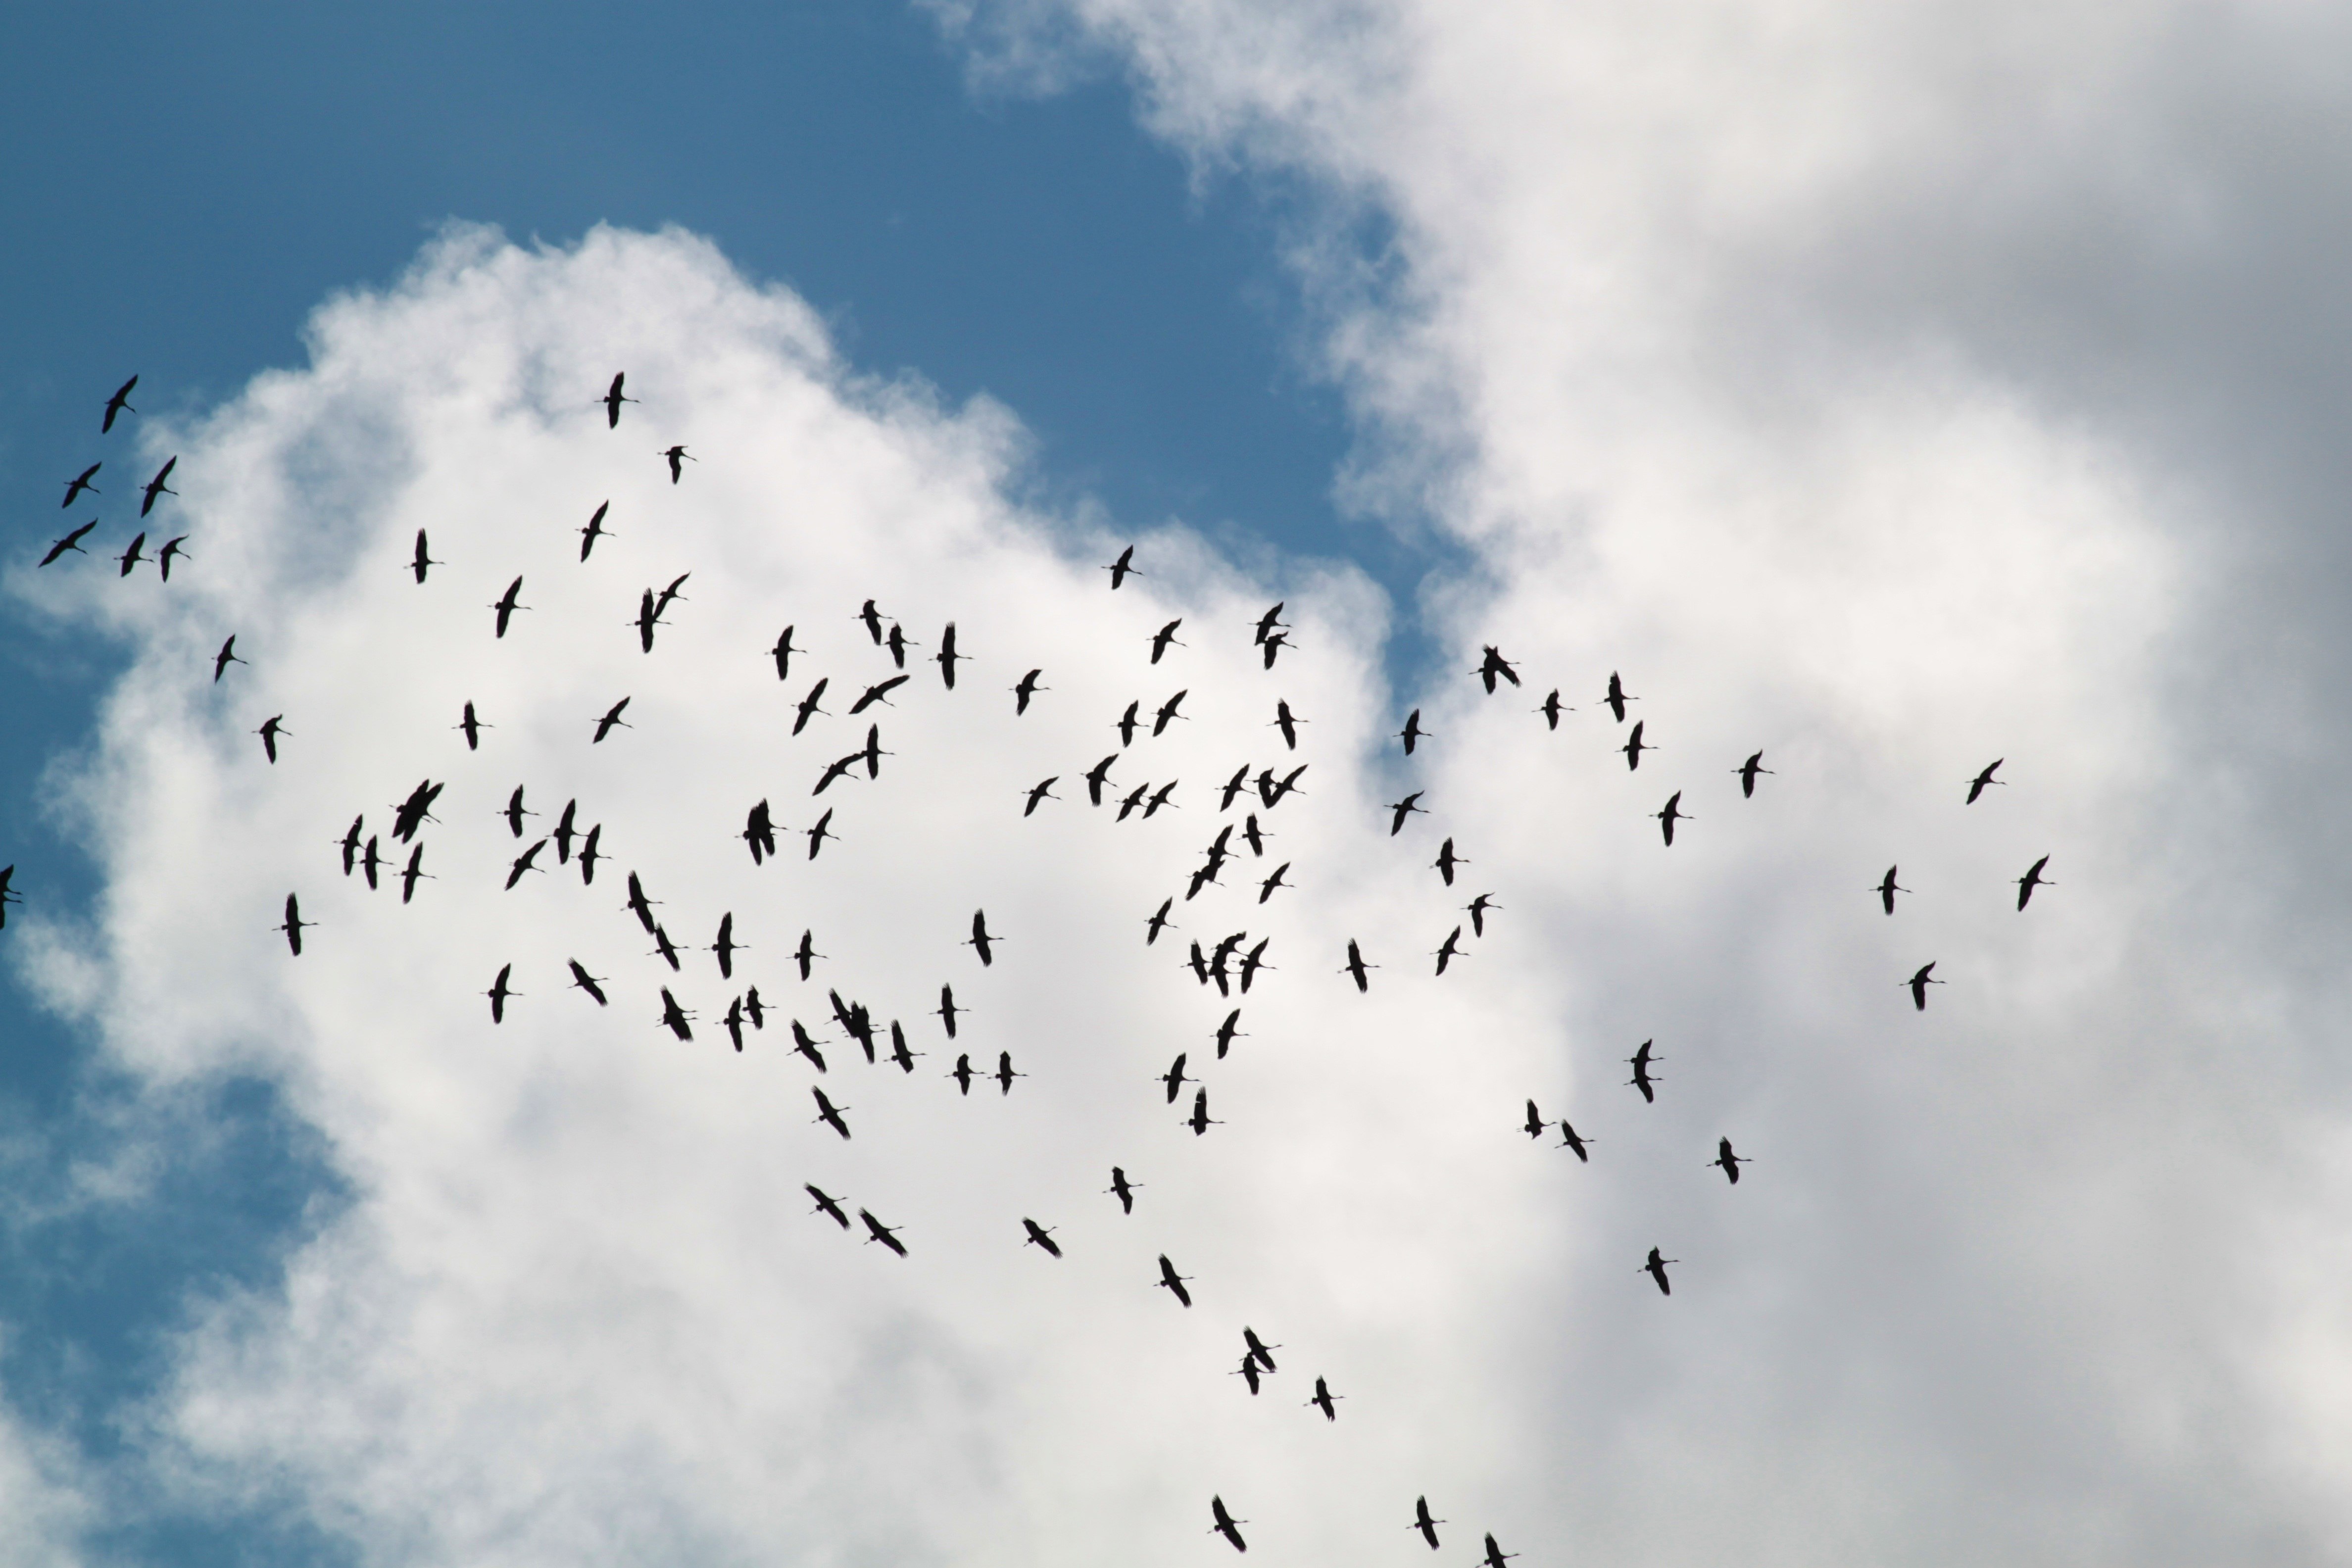 Flock of birds. Стая птиц. Птицы улетают. Птицы в небе. Стая перелетных птиц.